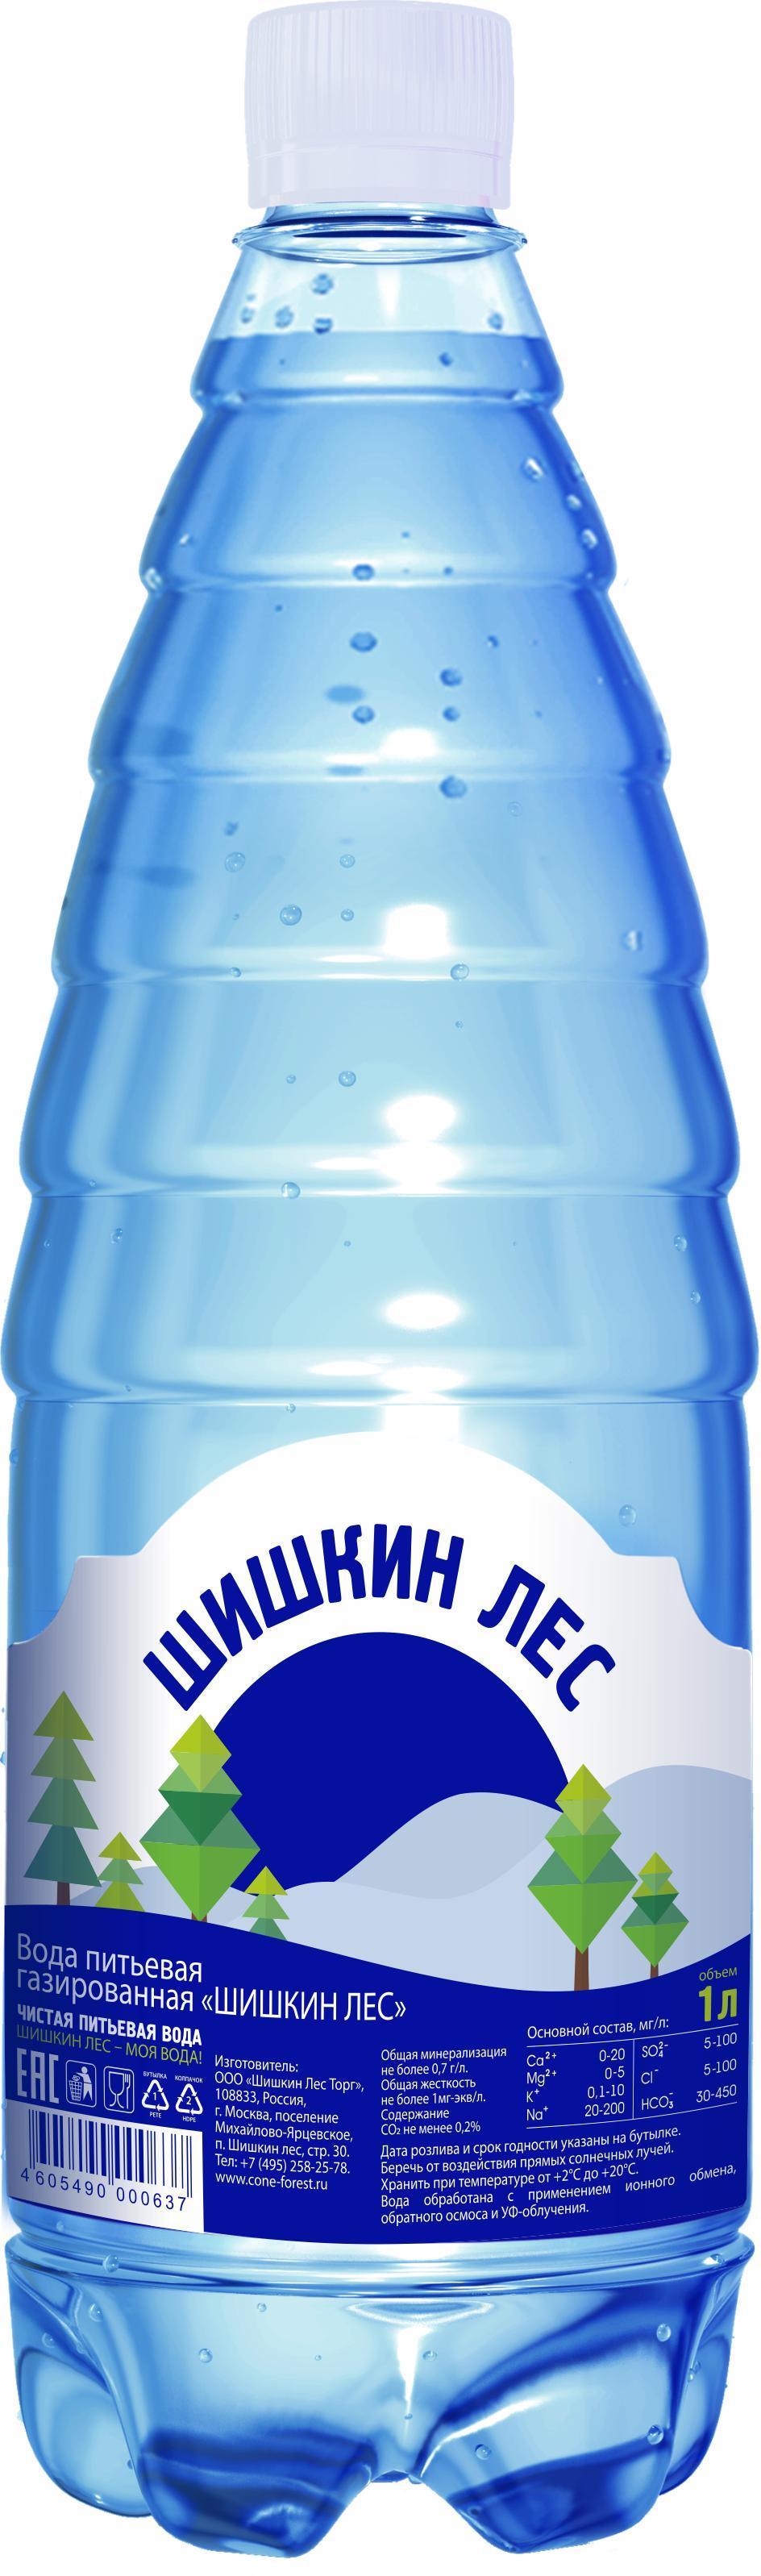 Вода Шишкин Лес питьевая газированная, 1 л., ПЭТ